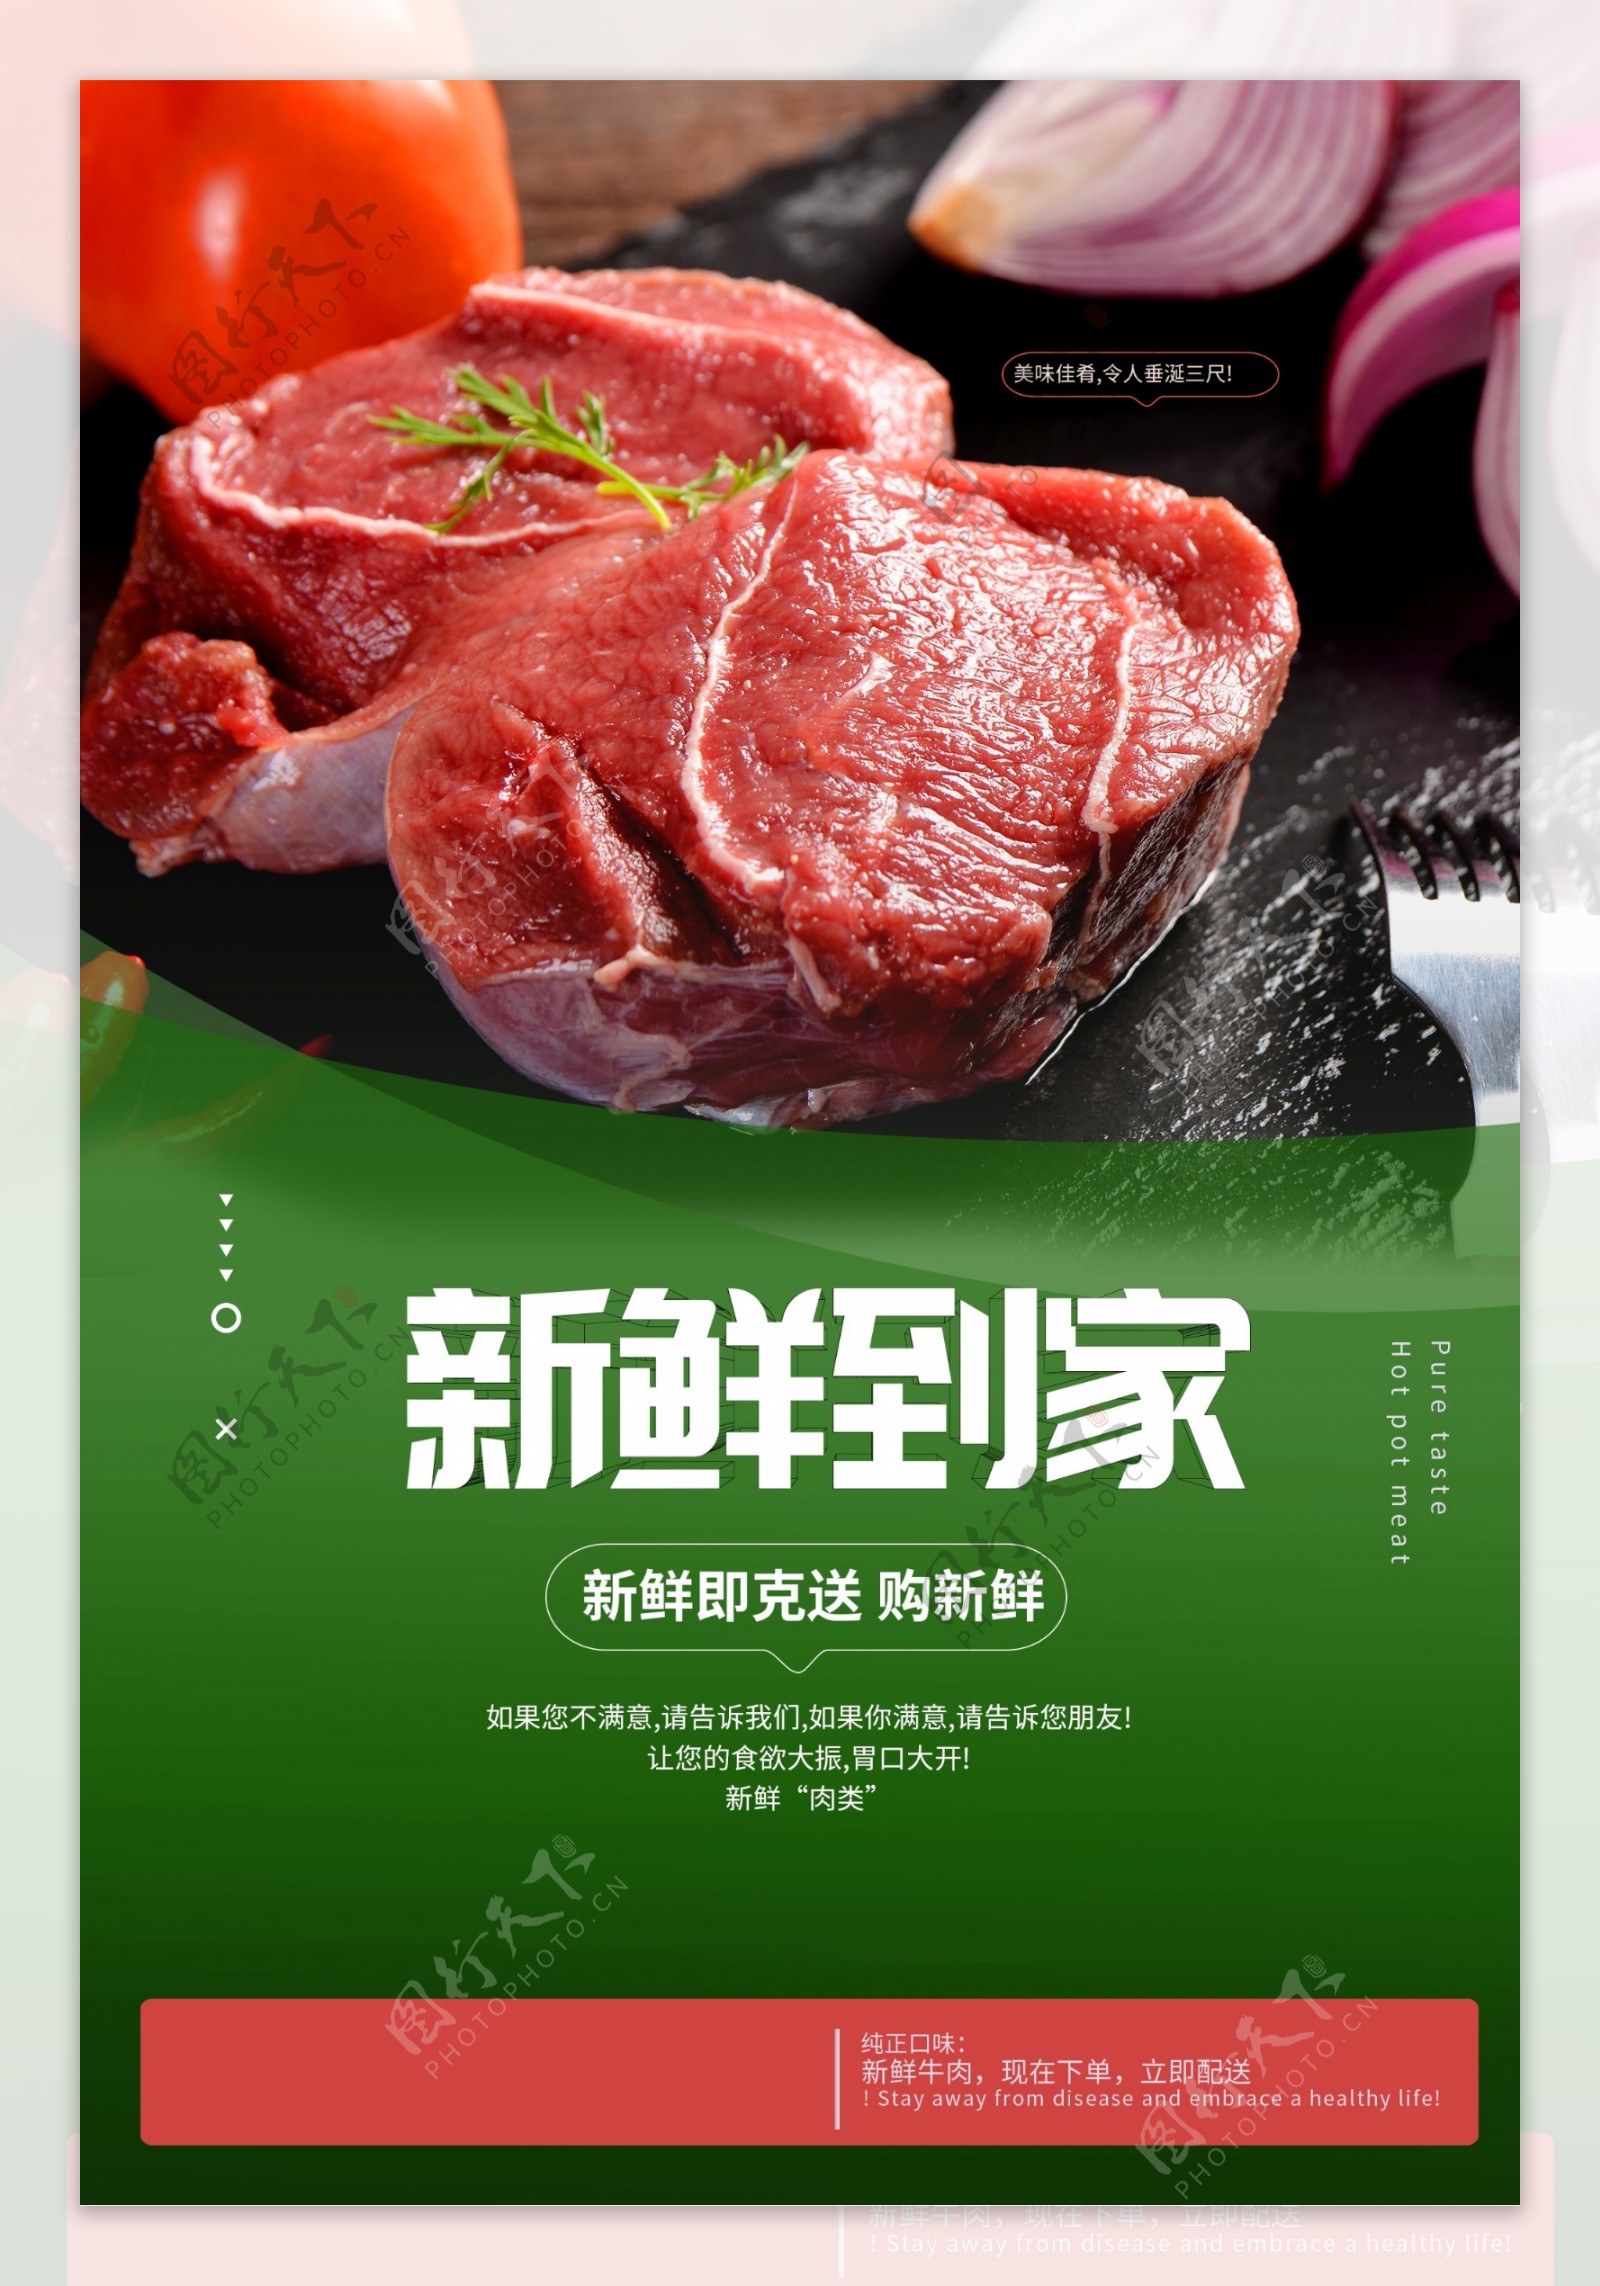 牛排猪肉超市活动宣传海报